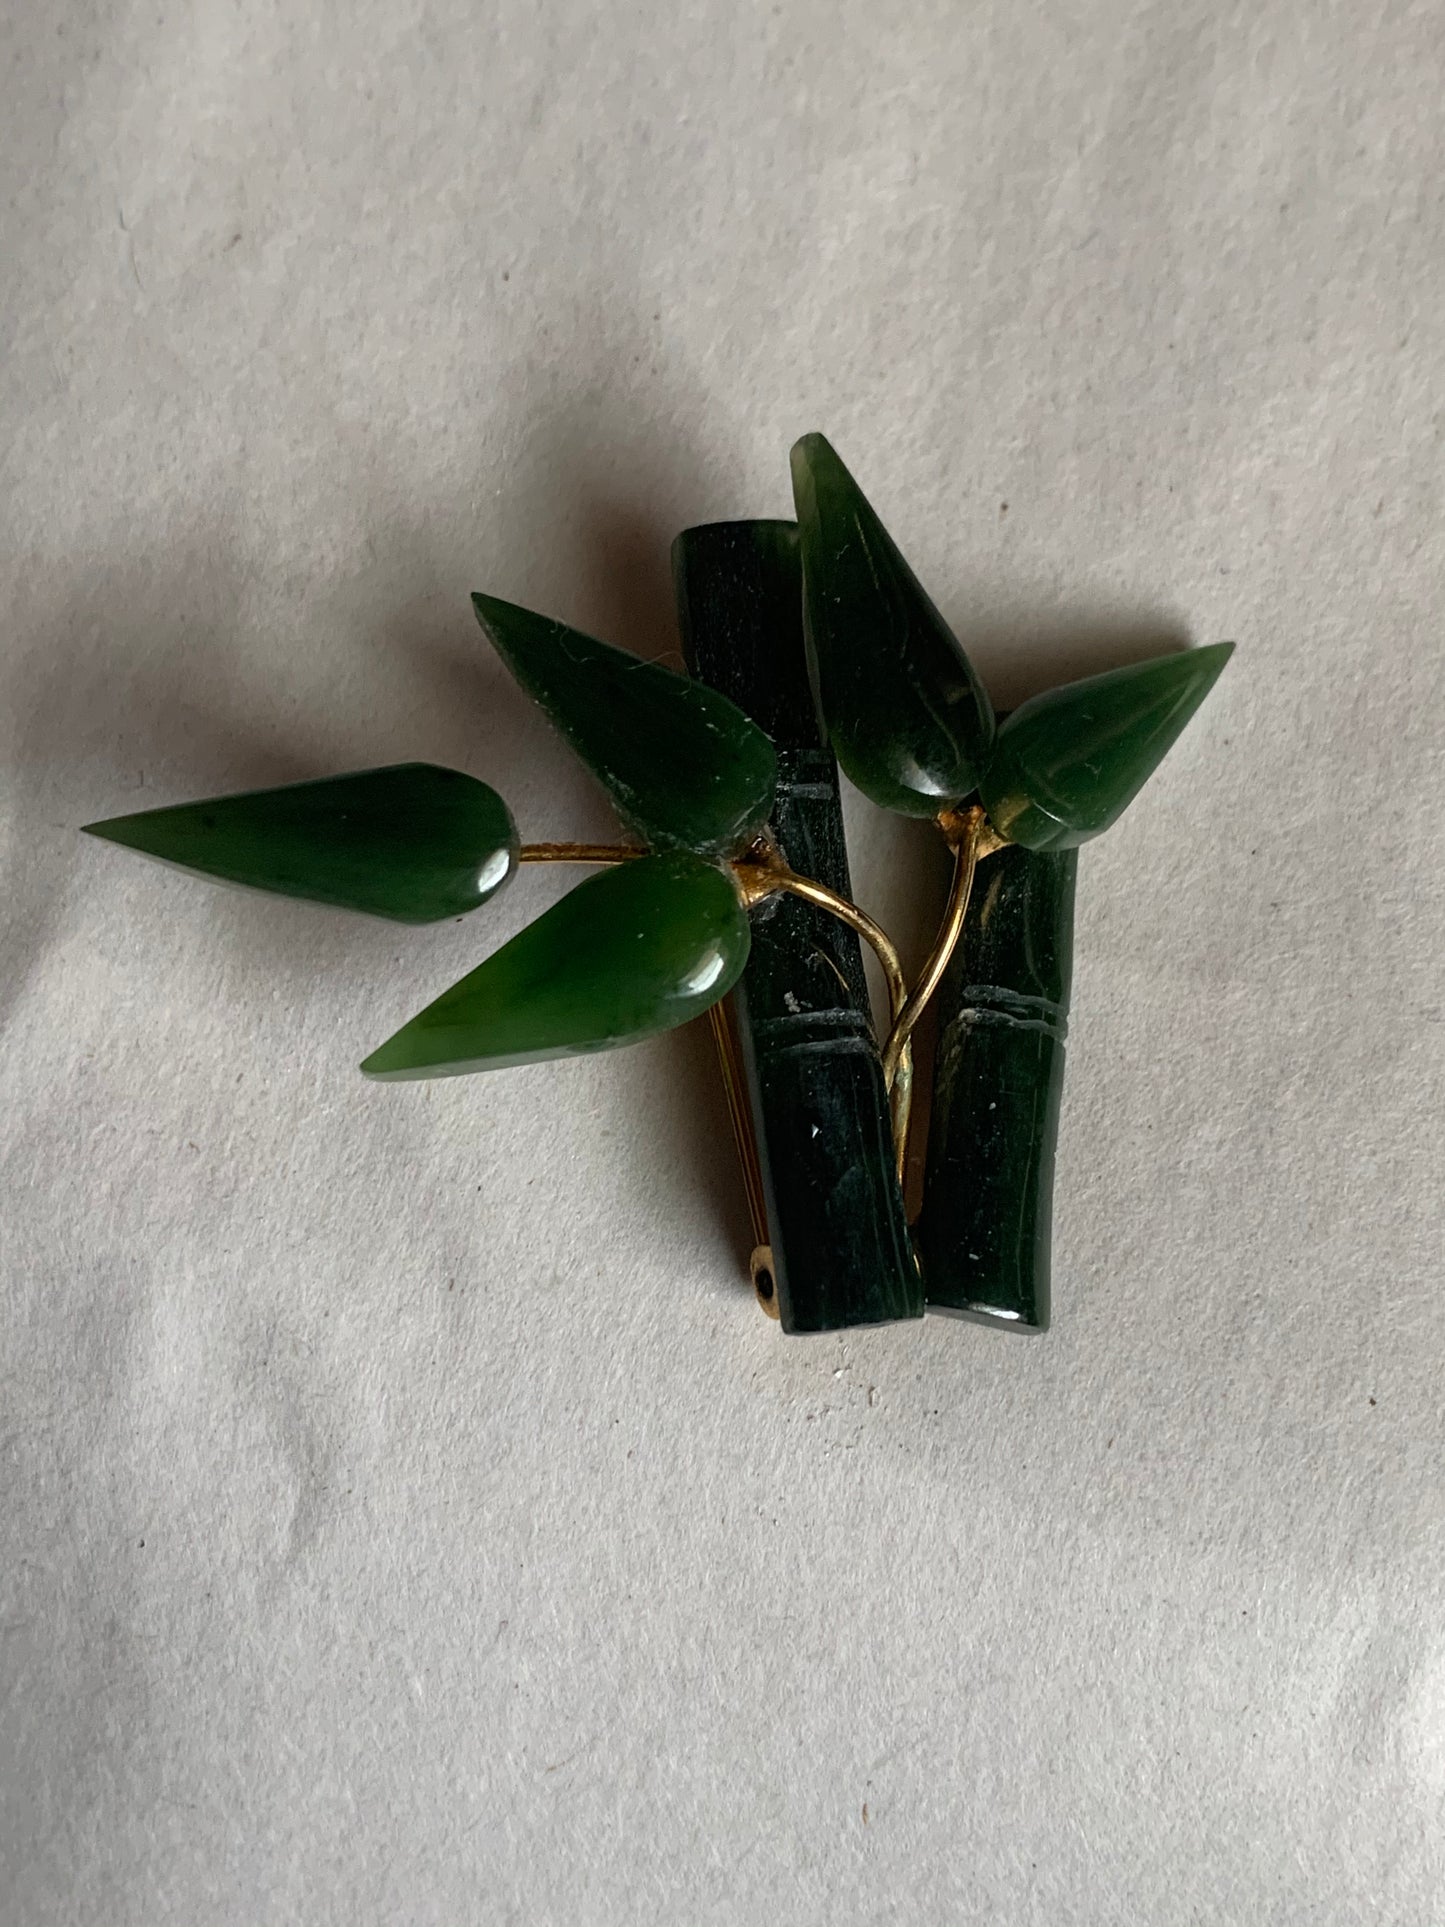 A jade nephrite brooch